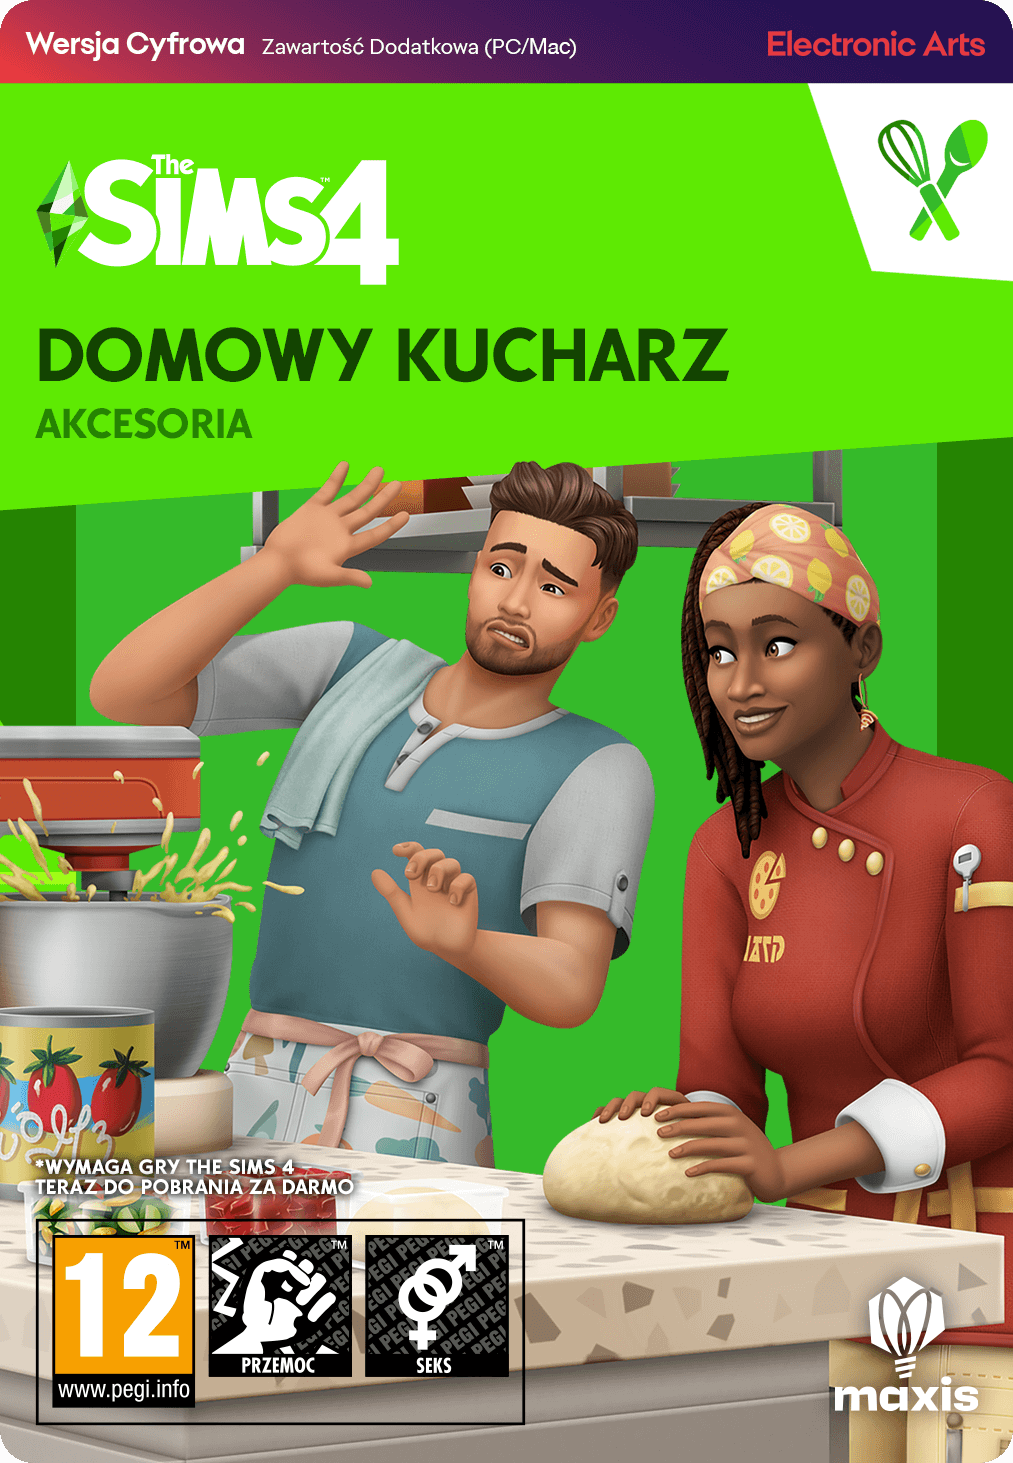 The Sims 4: Domowy kucharz Akcesoria (PC) PL klucz EA App